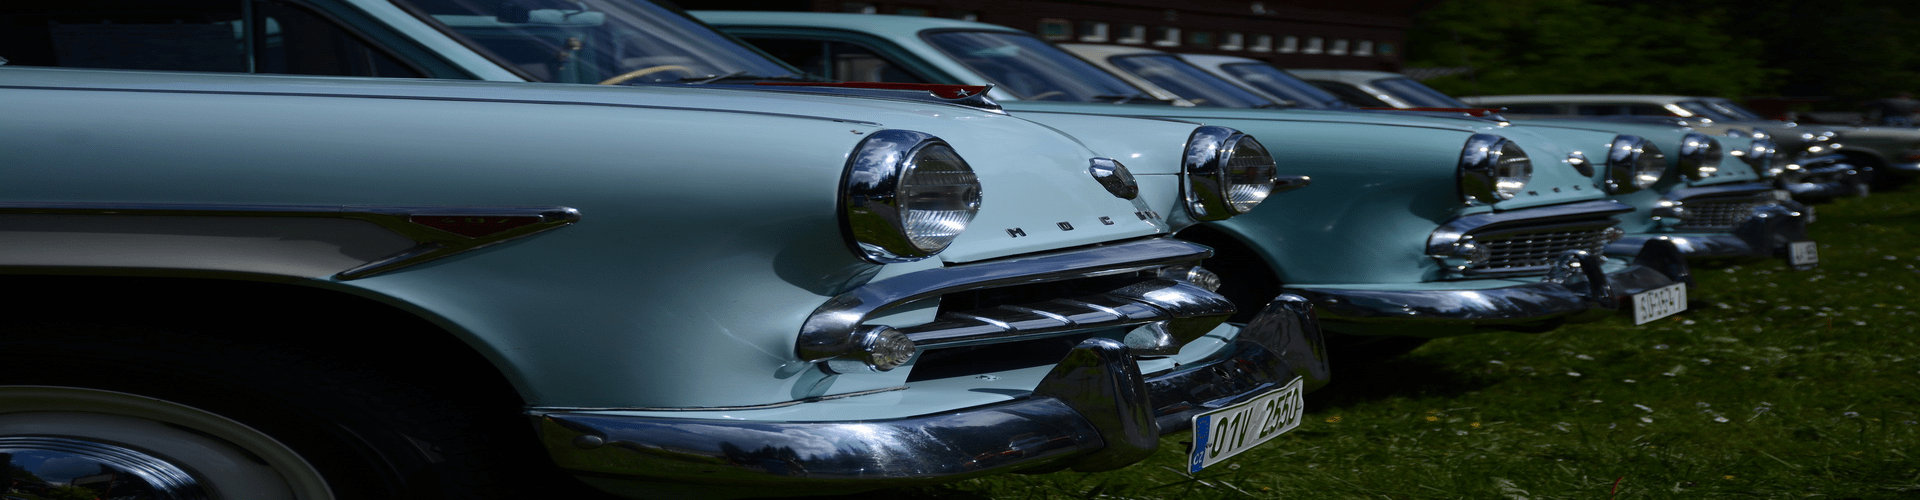 Los coches clásicos de Rusia que estuvieron de moda en los años 60